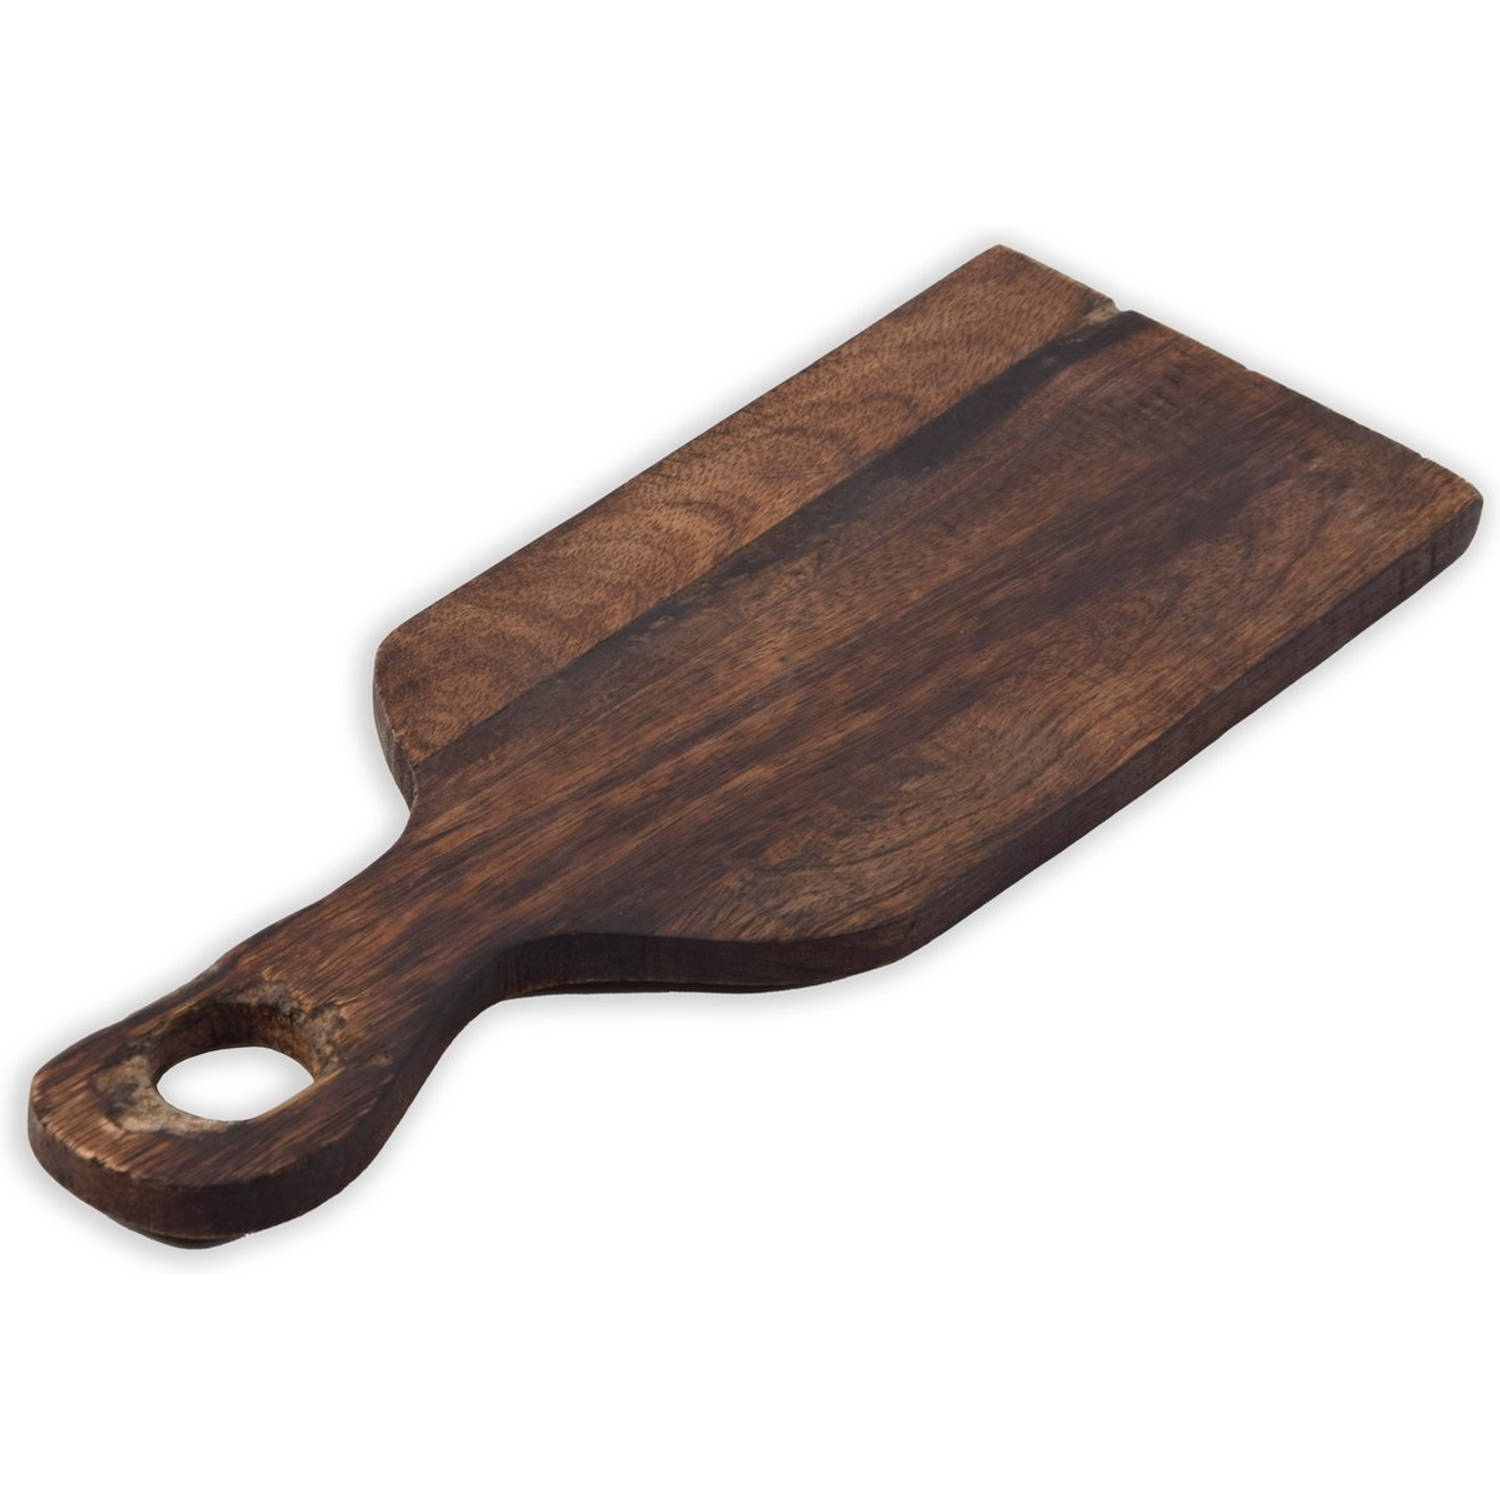 Handgemaakte mango hout snijplank - kaasplank - snijplank - serveerschaal - houten dienblad - hakblok - 14X36cm Hout